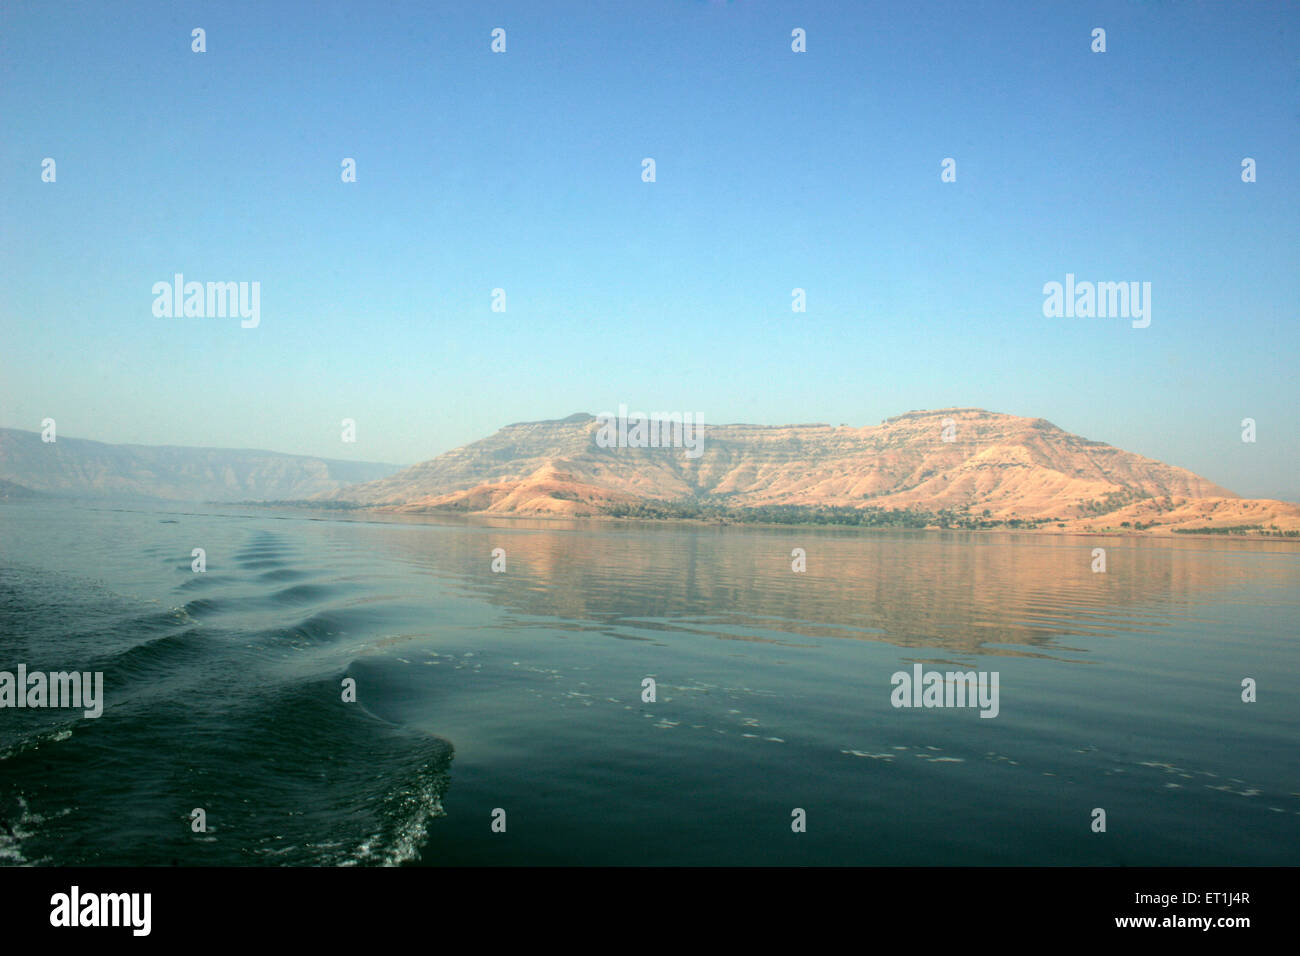 Landschaft mit leichten Wellen im See am Dhom Damm; Wai; Maharashtra; Indien Stockfoto